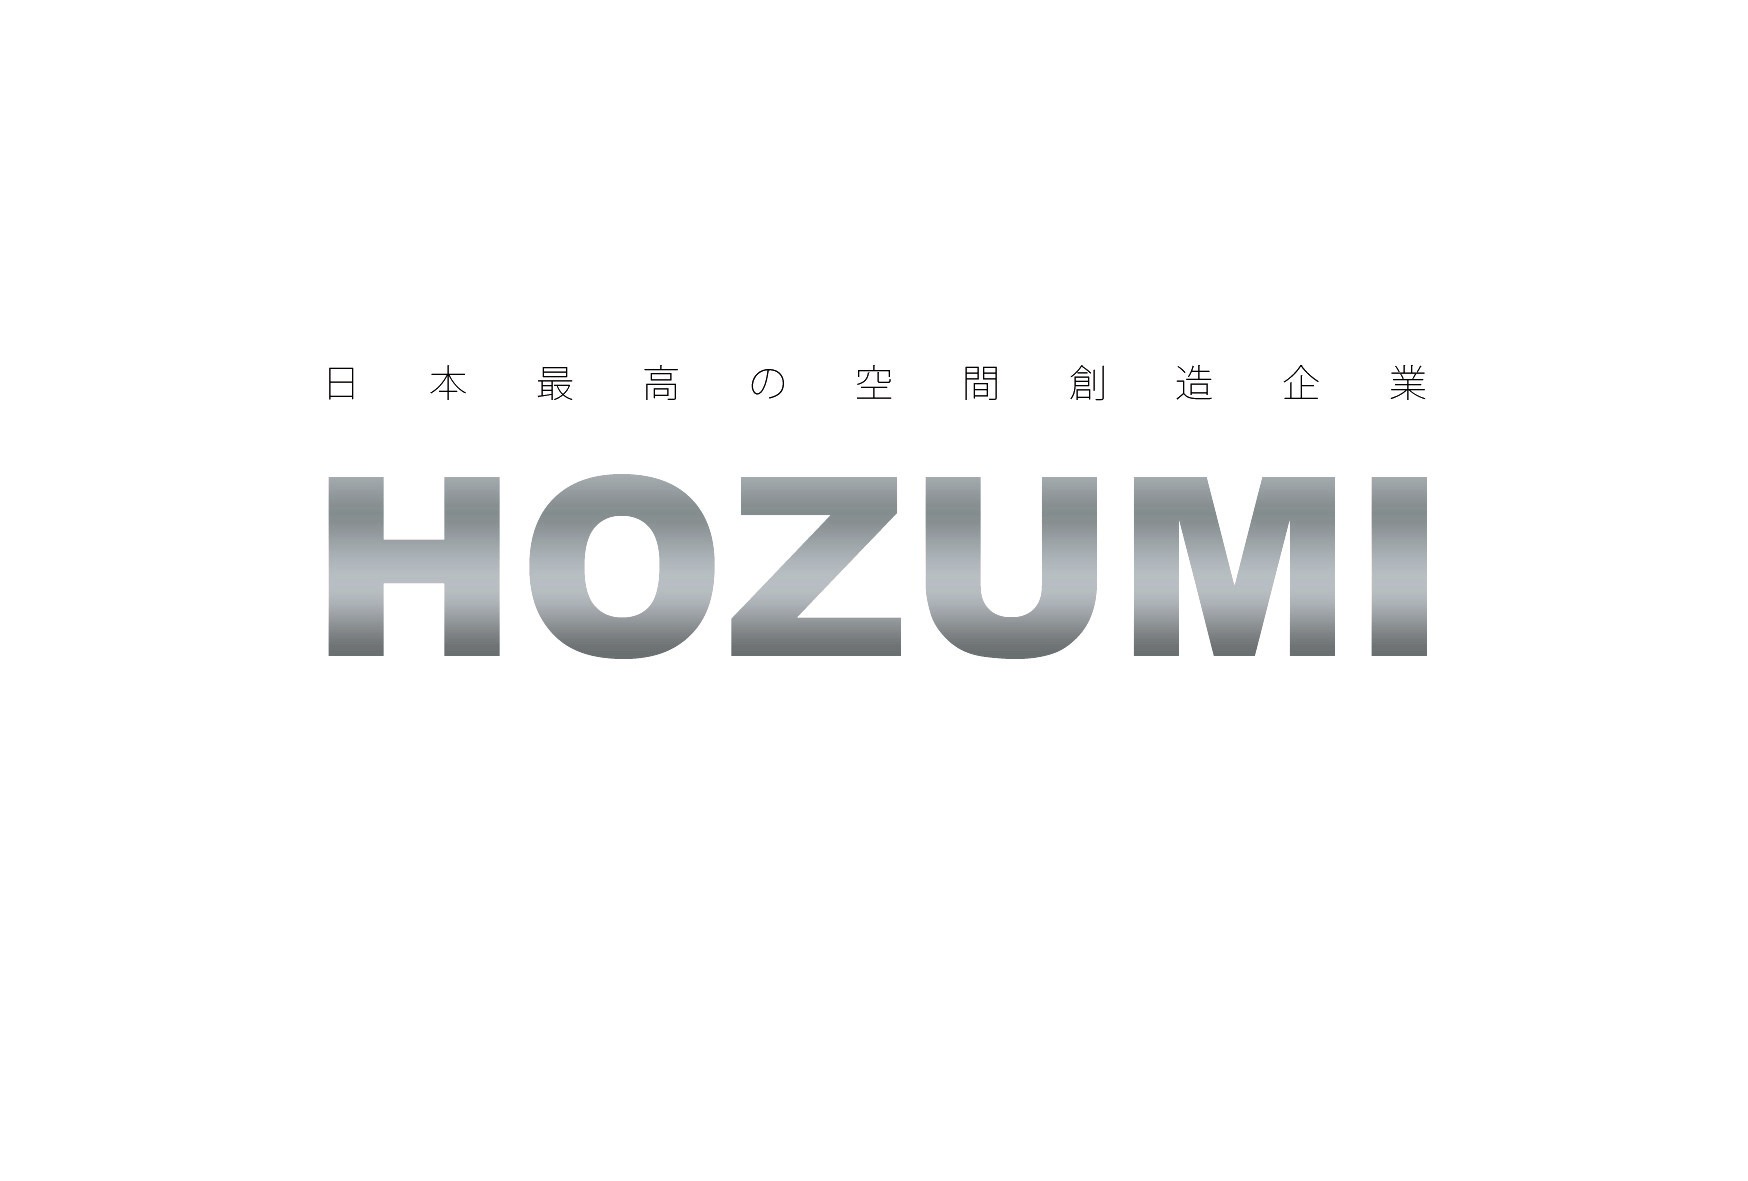 株式会社ほづみ(ダスキンフランチャイズチェーン加盟店)の企業ロゴ